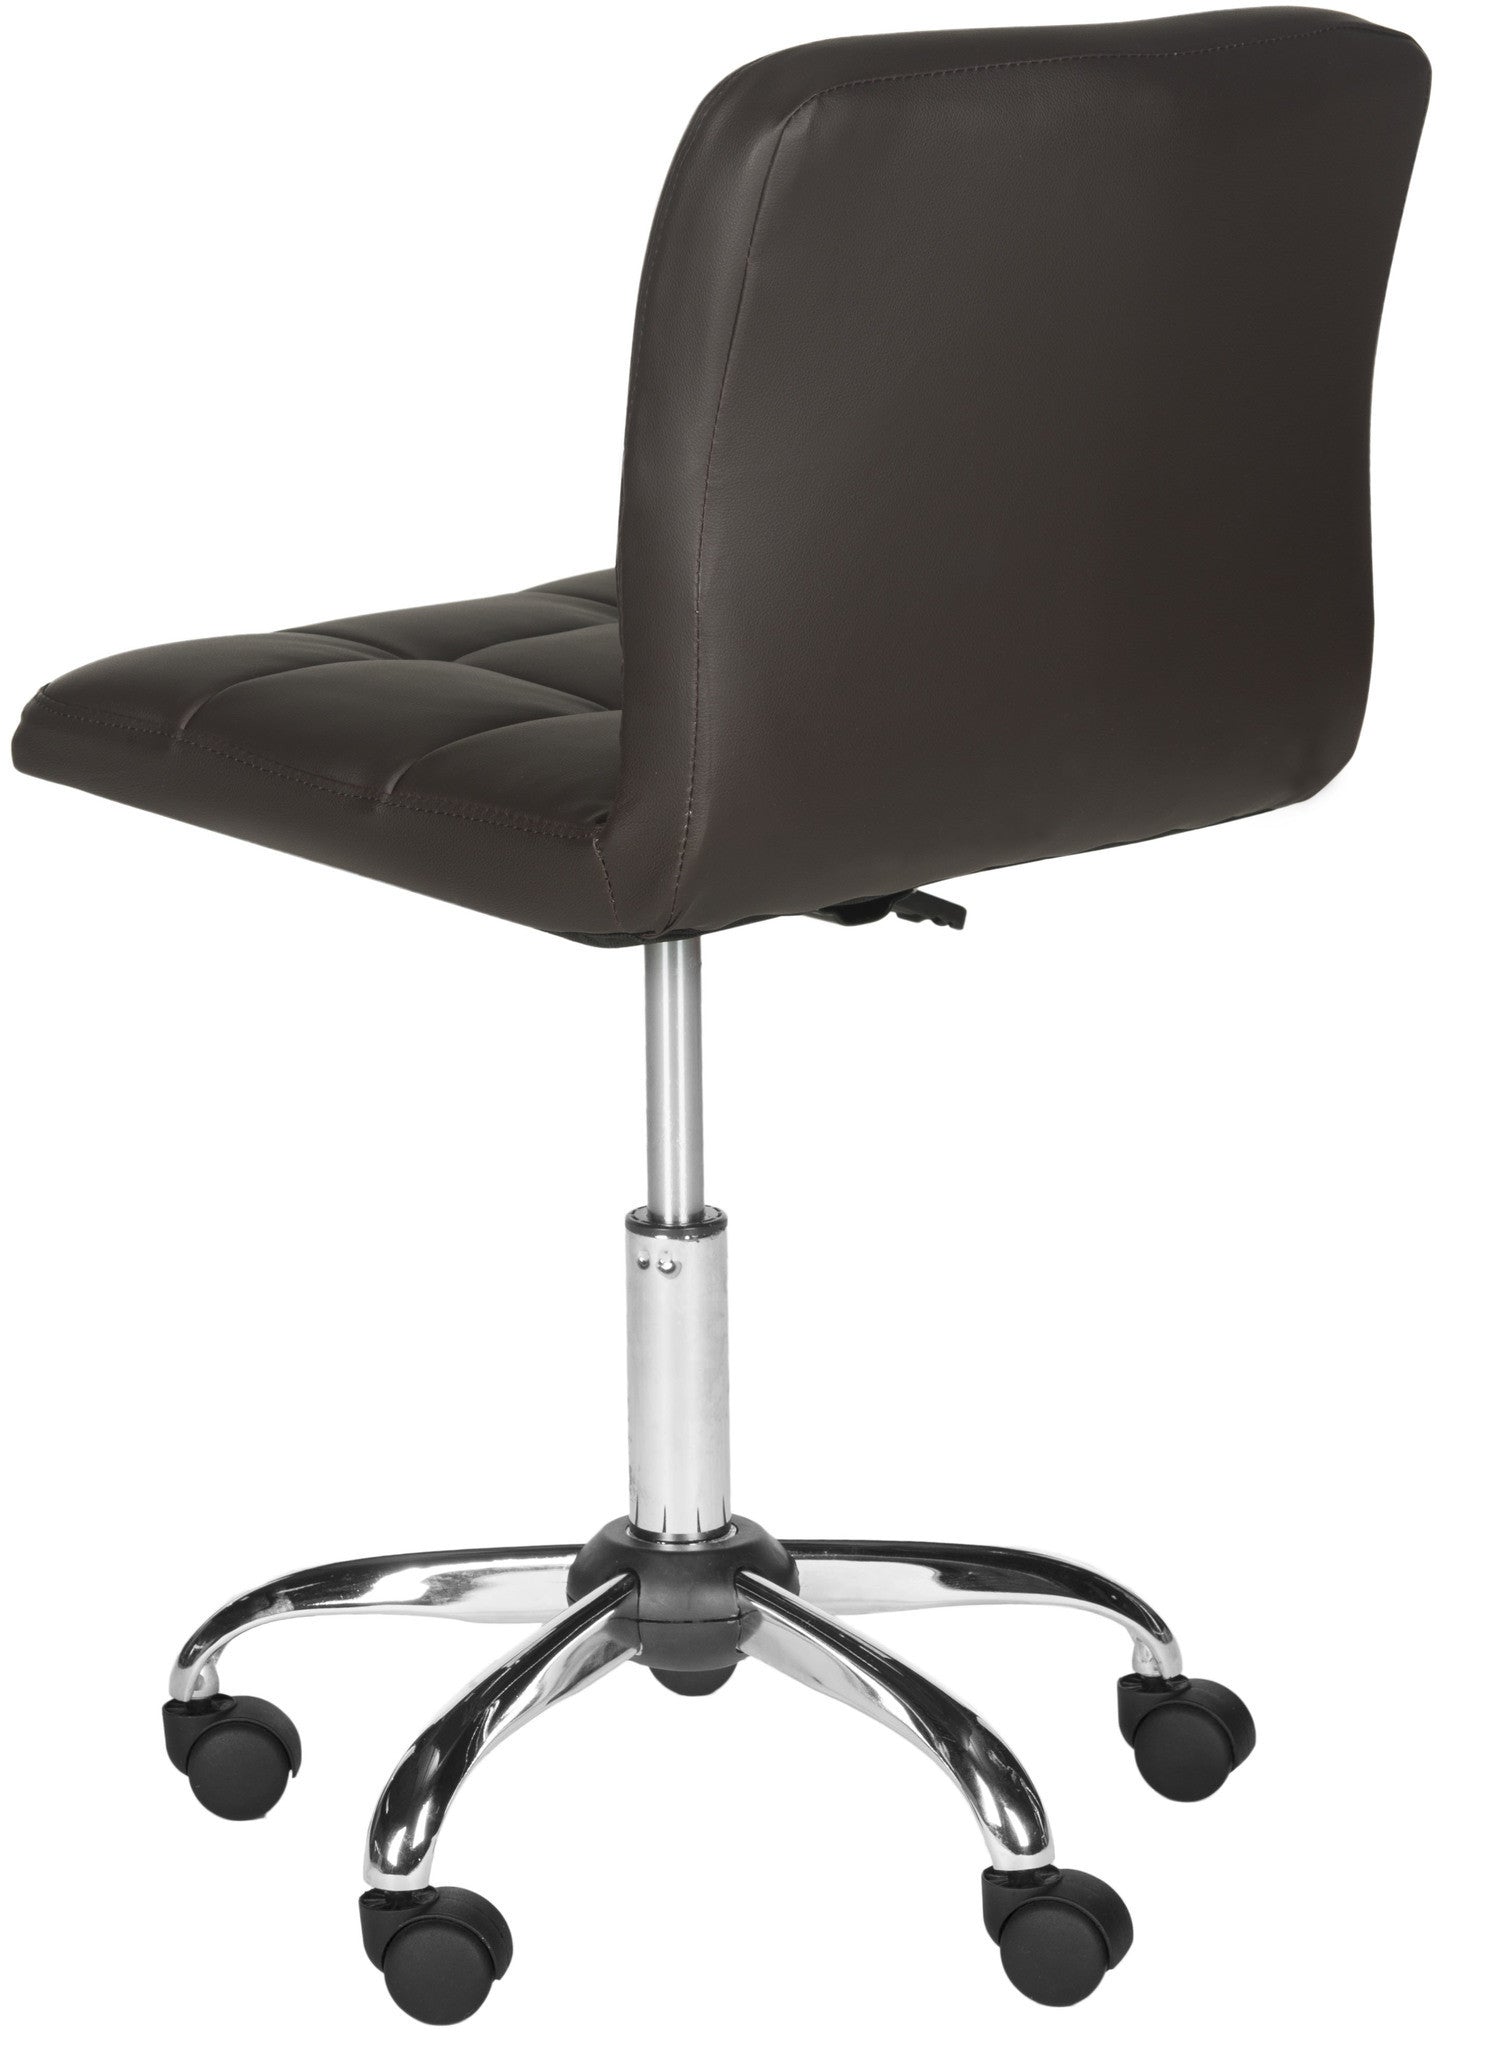 Safavieh Brunner Desk Chair | Office Chairs |  Modishstore  - 10